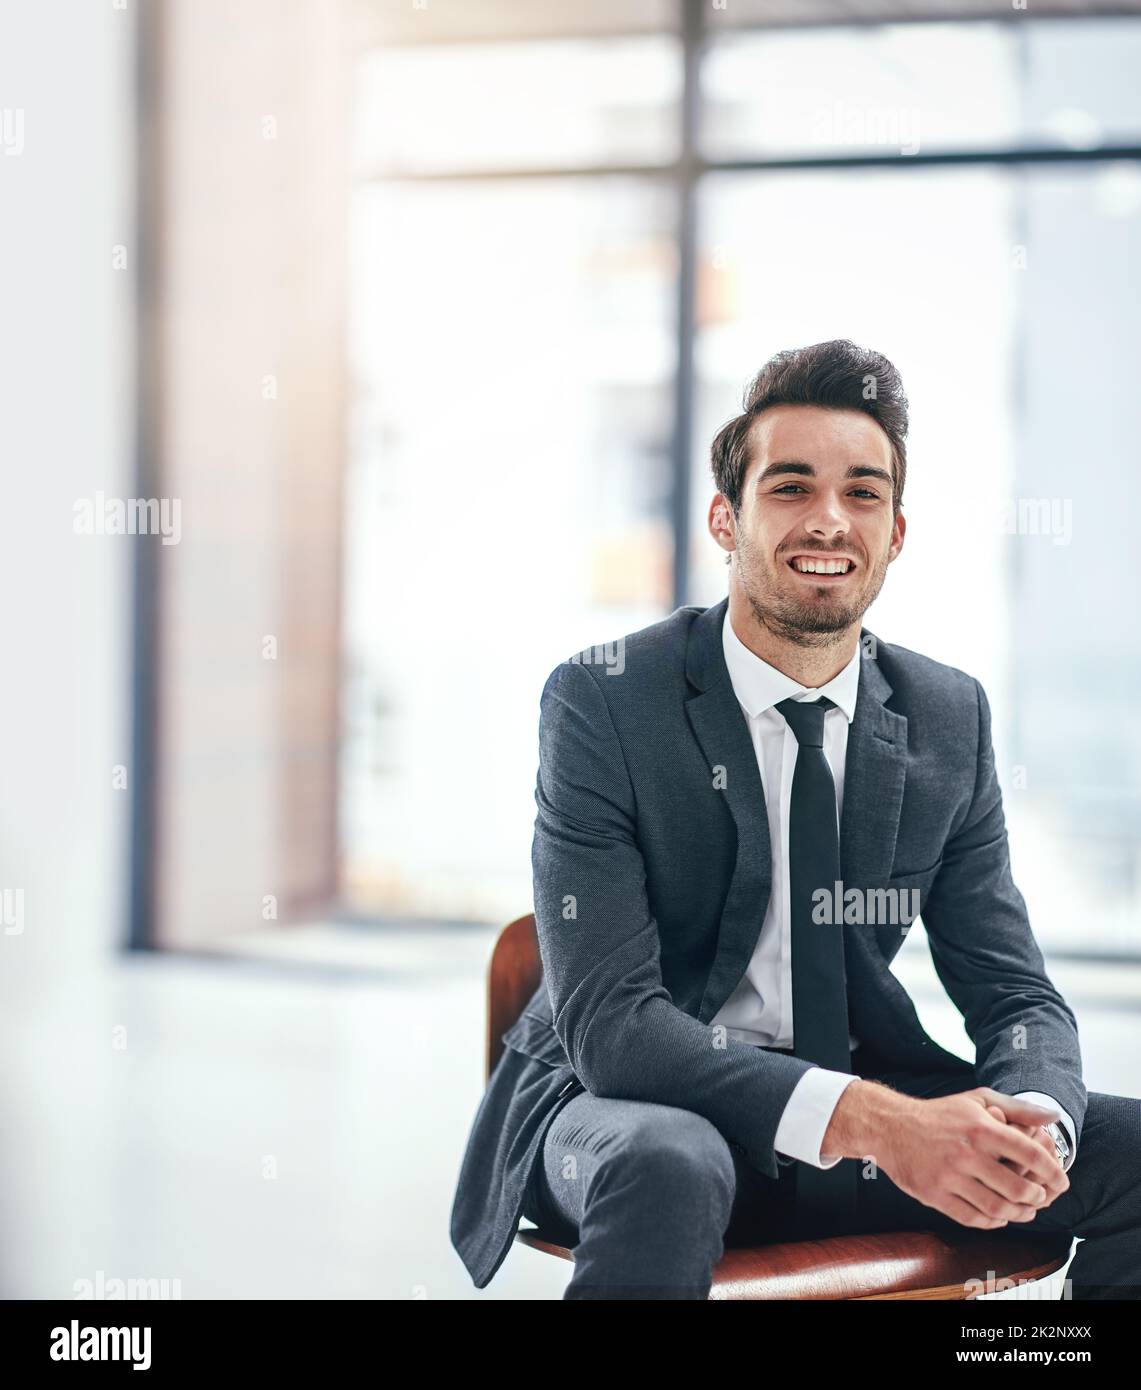 Le bonheur est un travail que vous aimez. Portrait d'un jeune homme d'affaires heureux posant dans le bureau. Banque D'Images